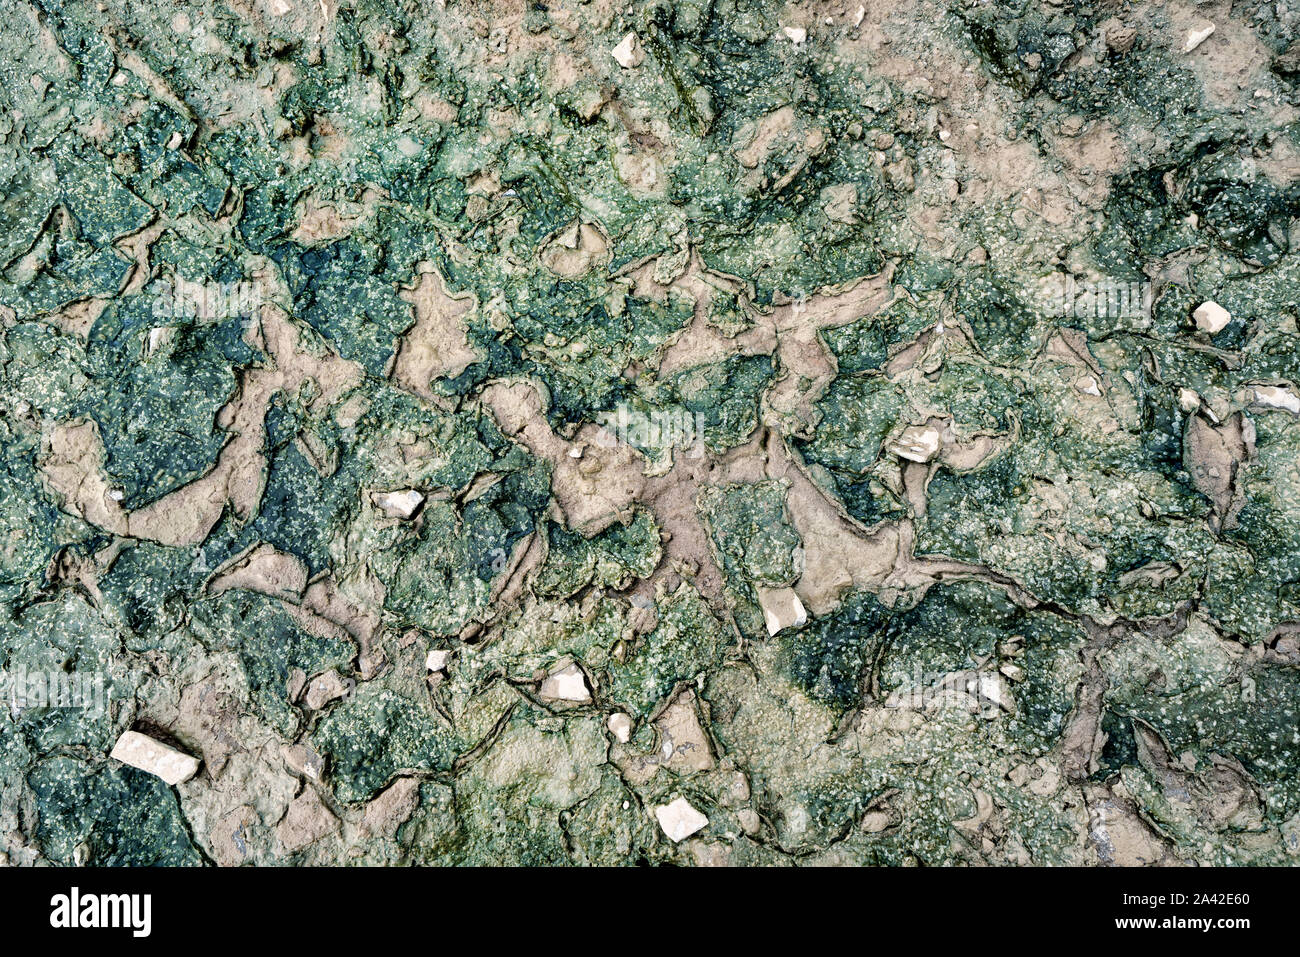 Schleimige Algen in einer Pfütze Stockfoto